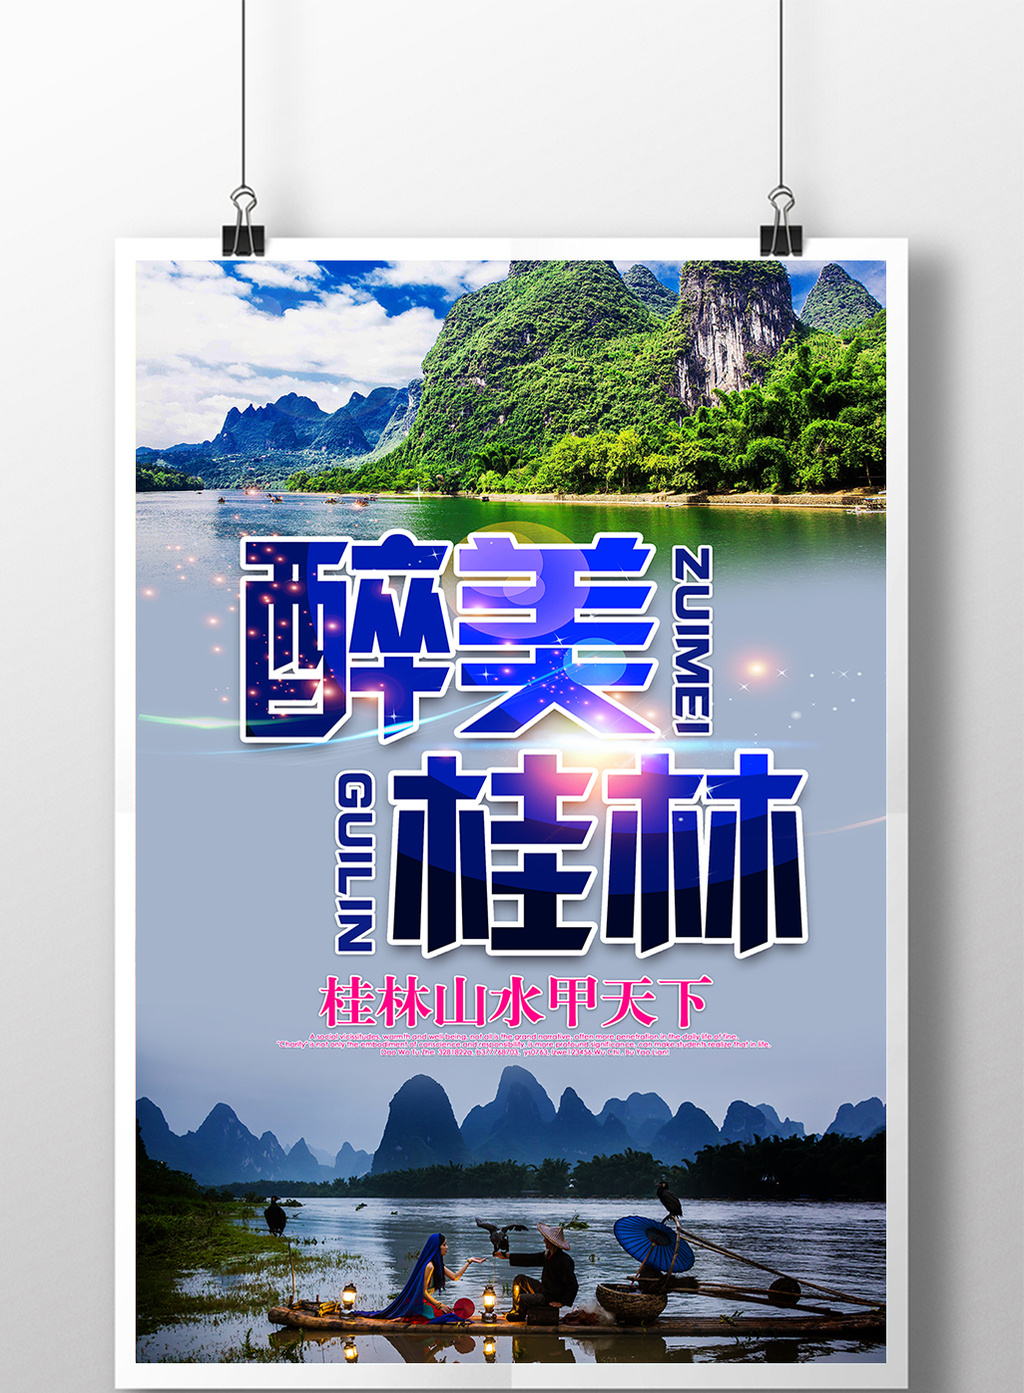 醉美桂林旅游宣传海报设计